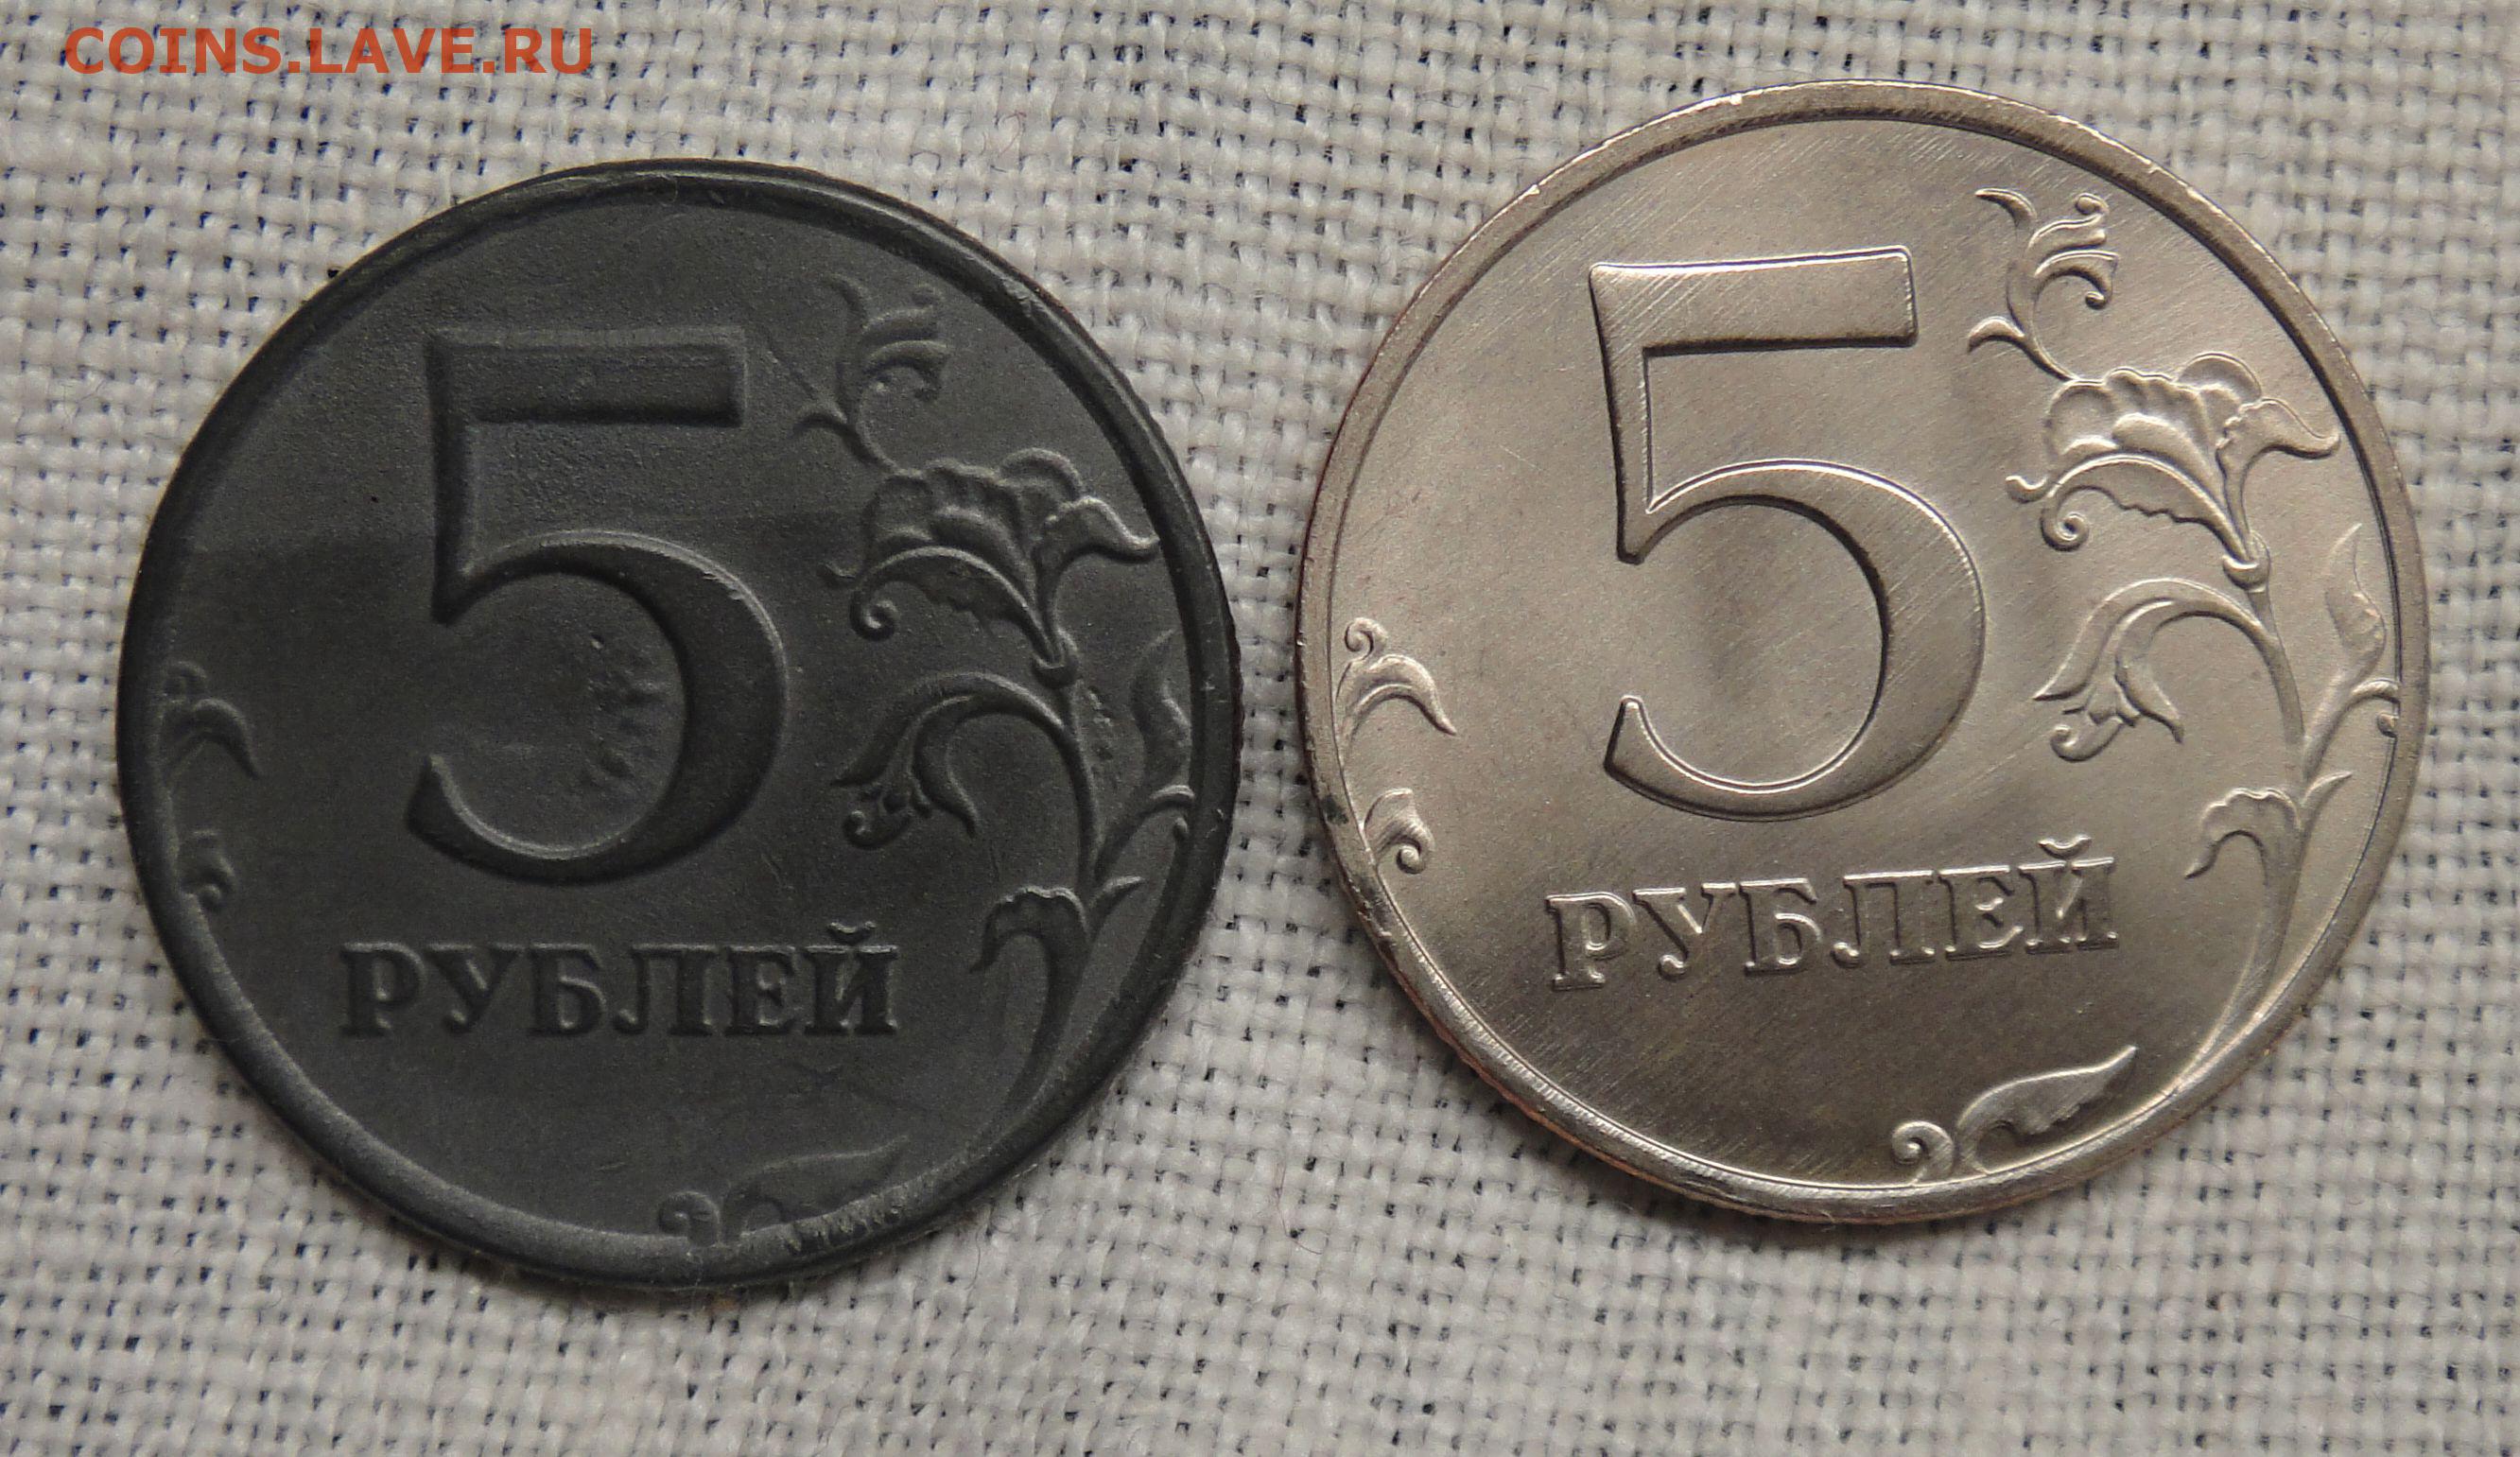 13 5 в рублях. Фальшивые 5 рублей. 5 Рублей 1997. 5 Руб 1997. Пять рублей 1997 метало.